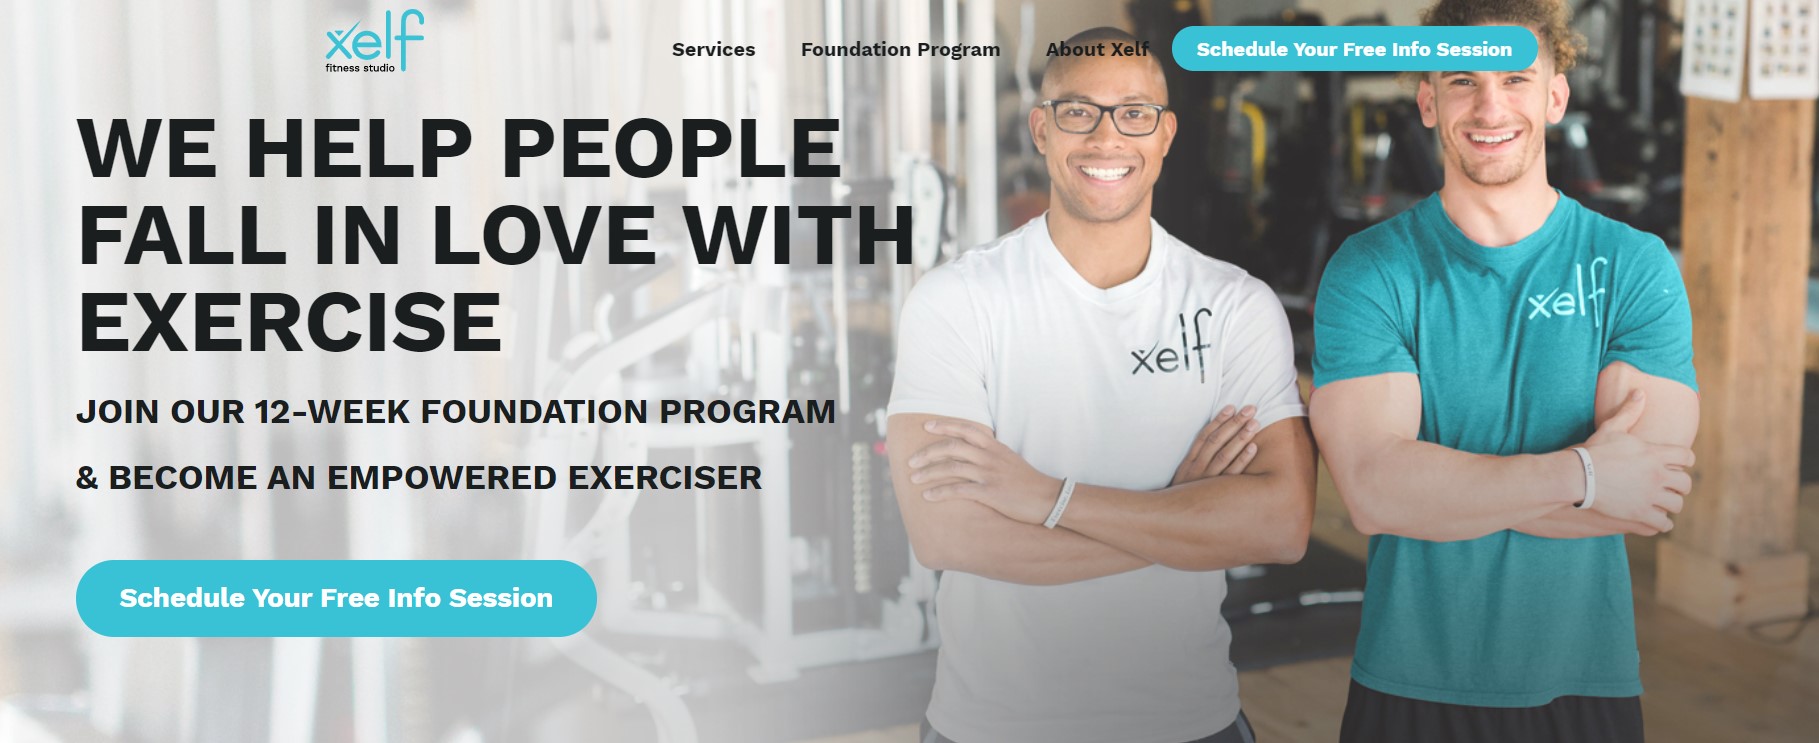 xelf fitness personal trainer in hamilton